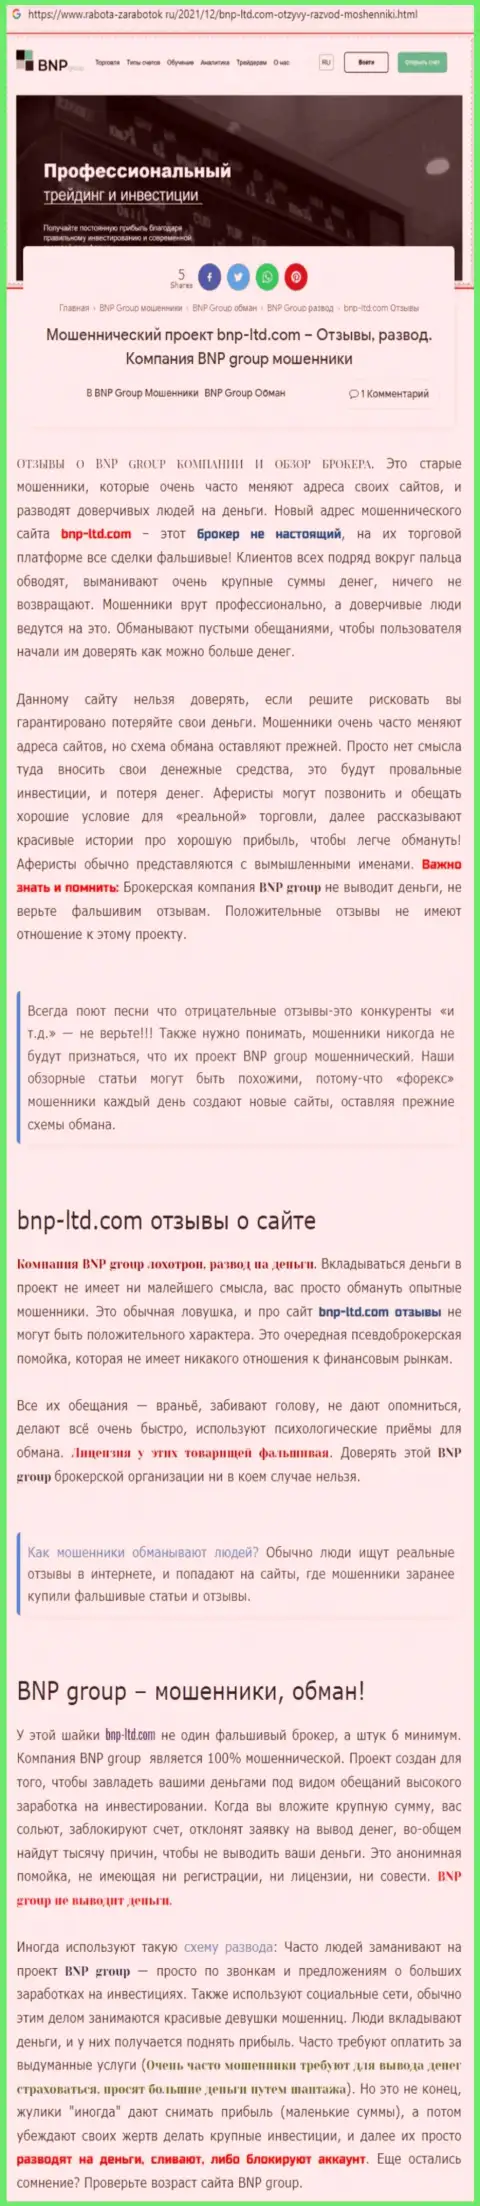 О перечисленных в организацию BNPLtd сбережениях можете и не вспоминать, крадут все до последнего рубля (обзор противозаконных деяний)